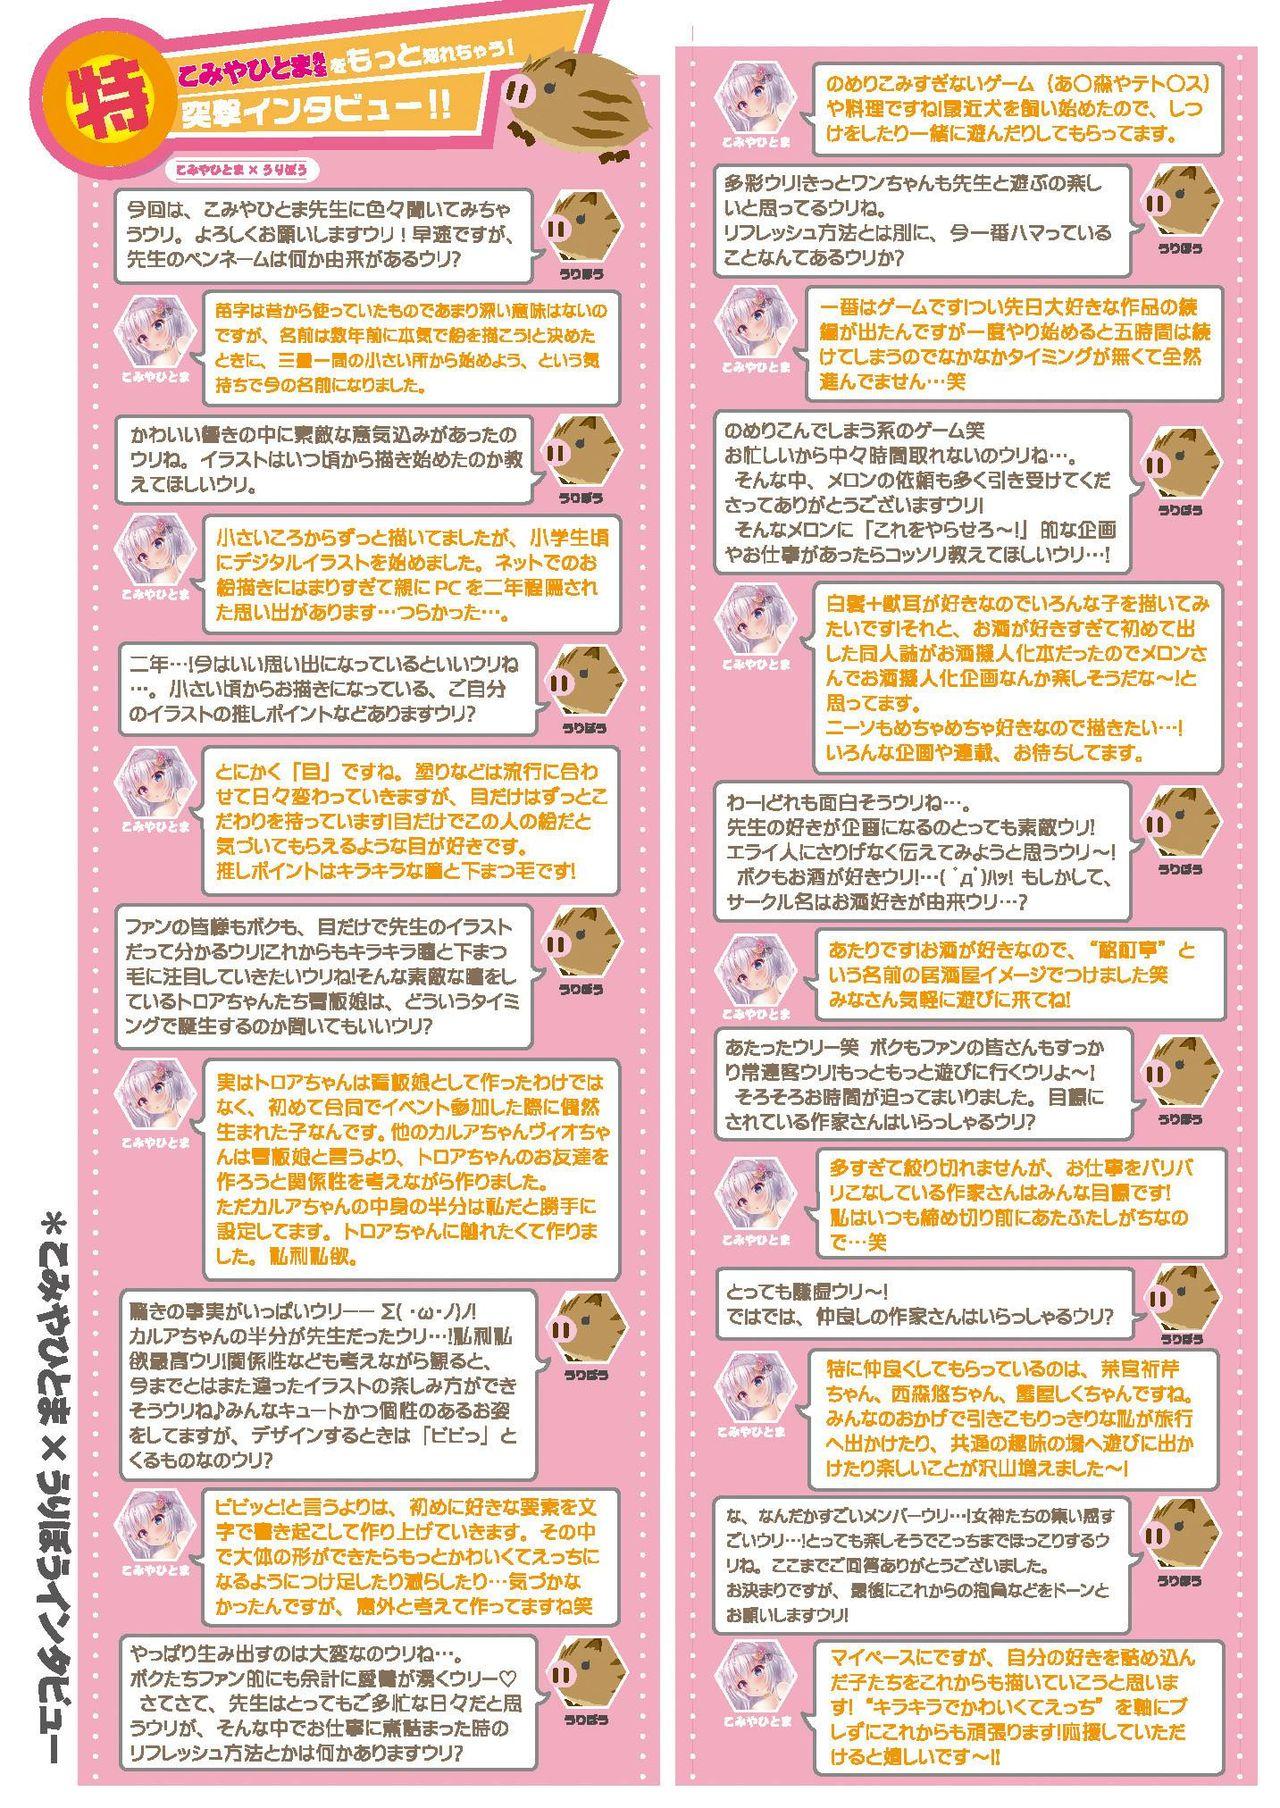 月刊うりぼうざっか店 2020年9月4日発行号 4